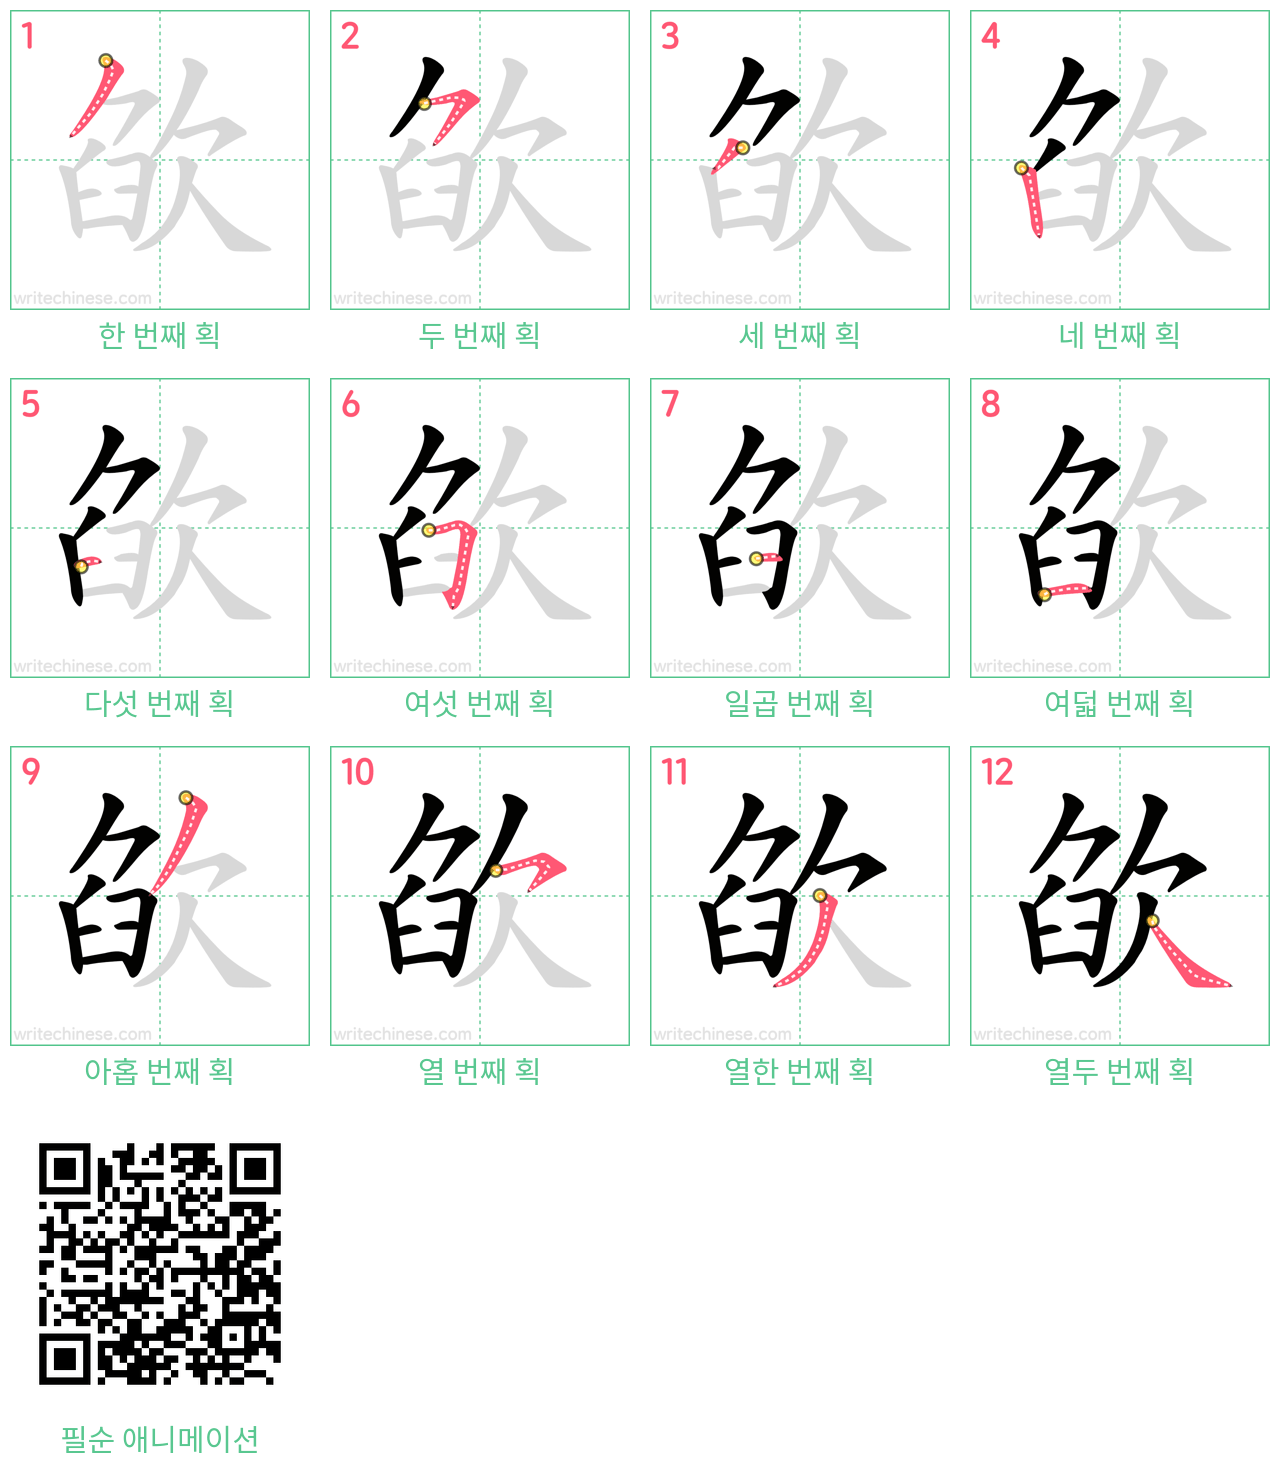 欿 step-by-step stroke order diagrams